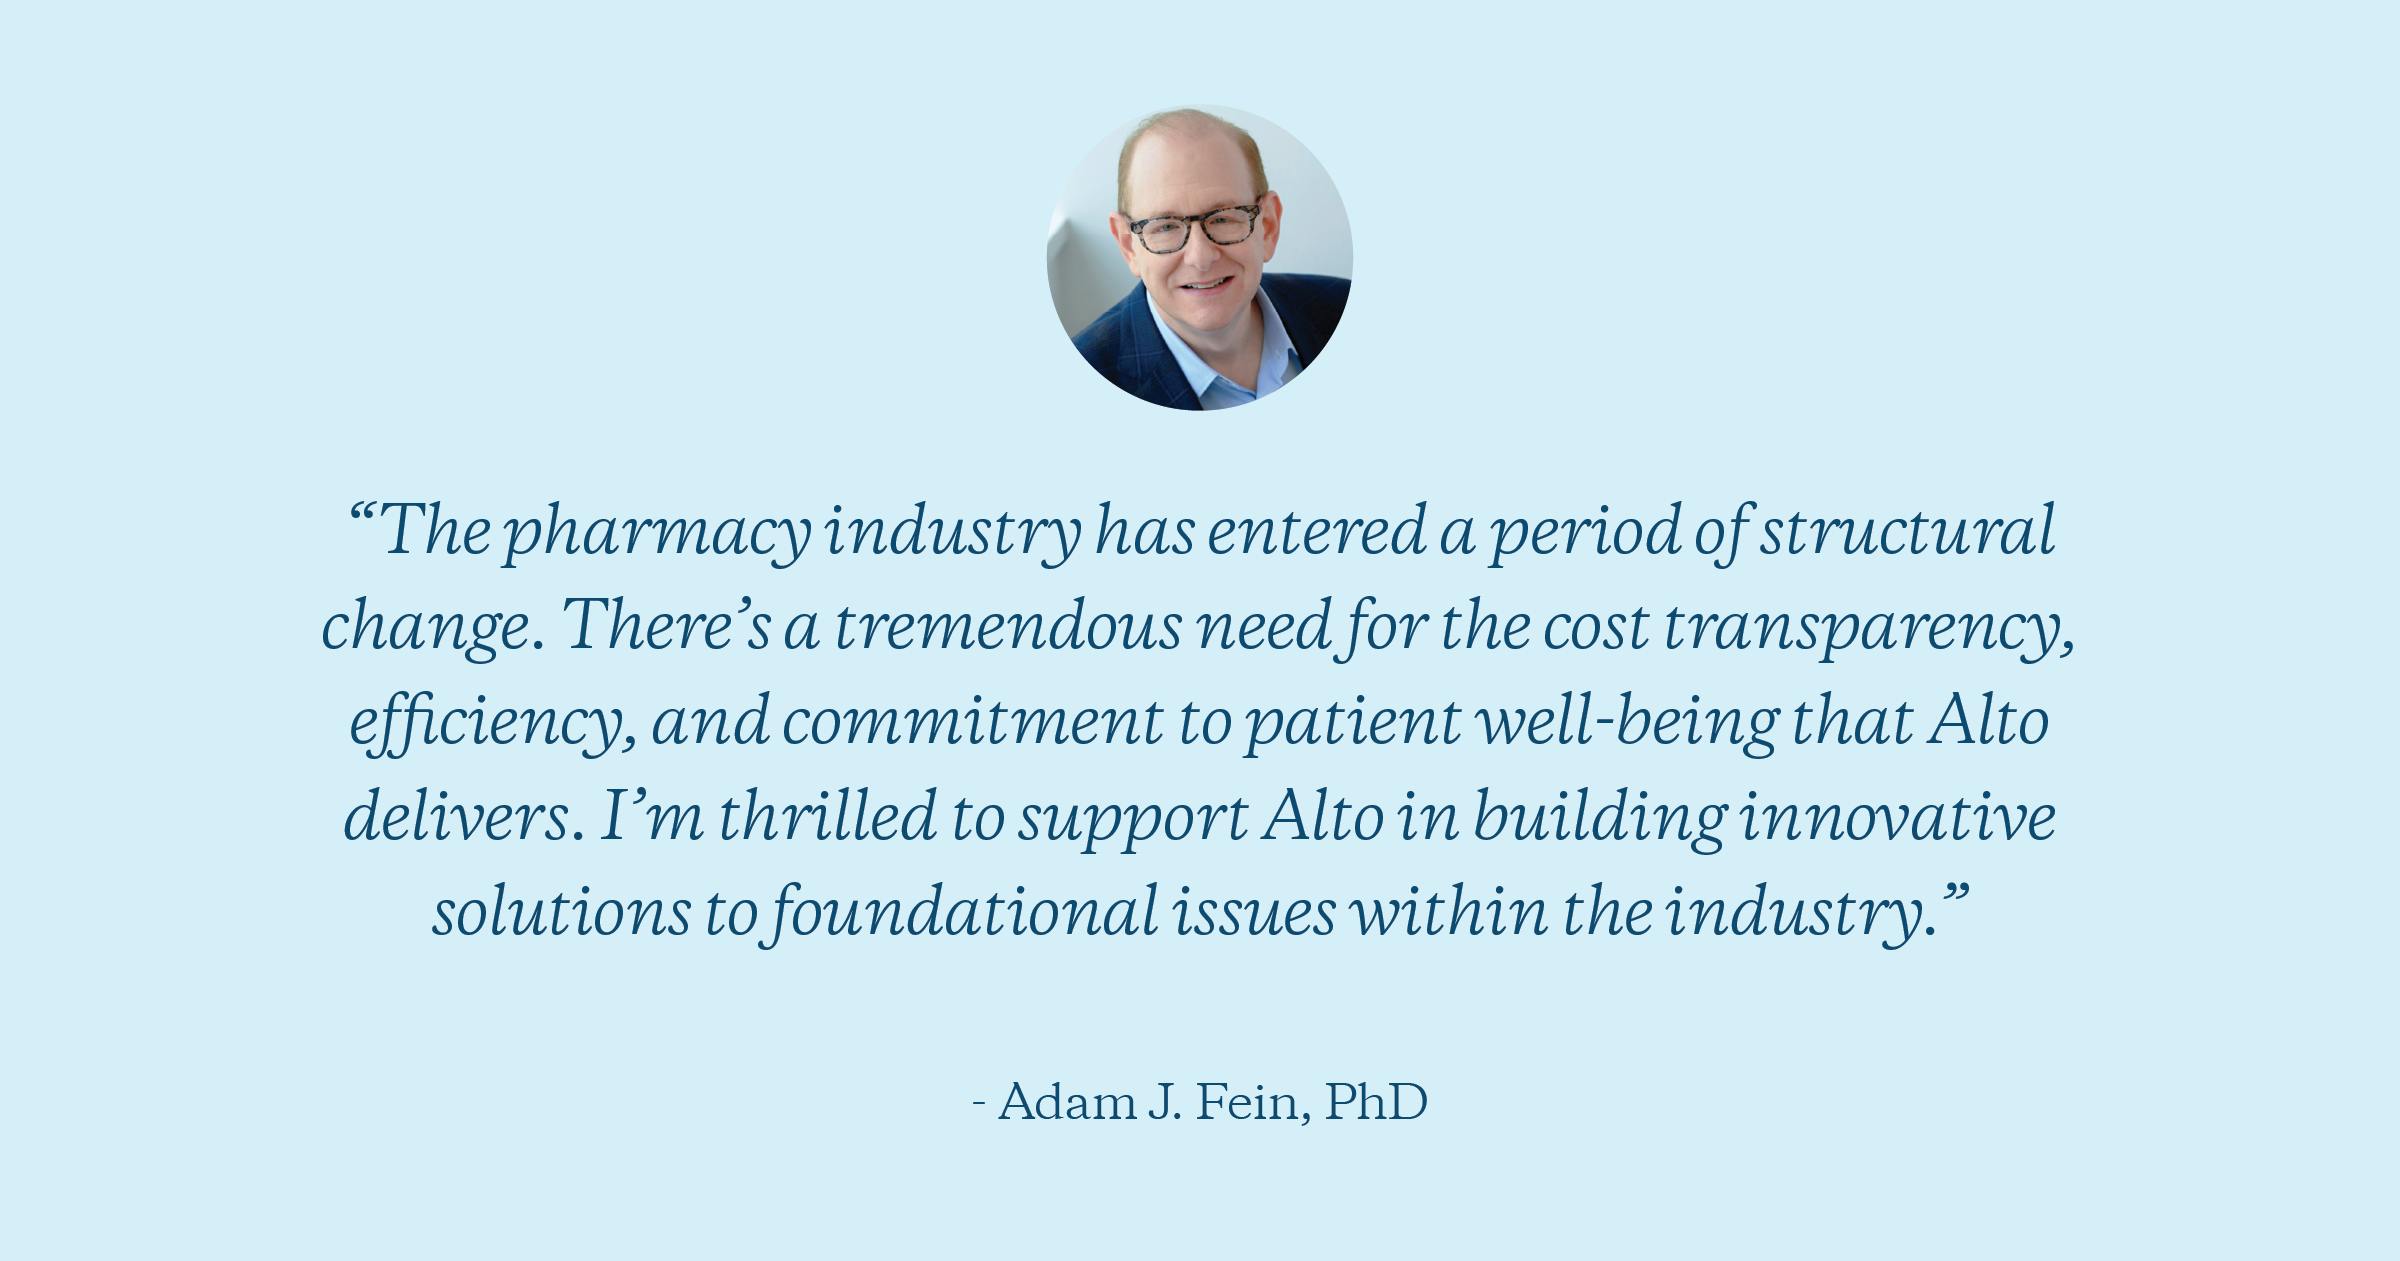 Dr. Adam J. Fein, PhD